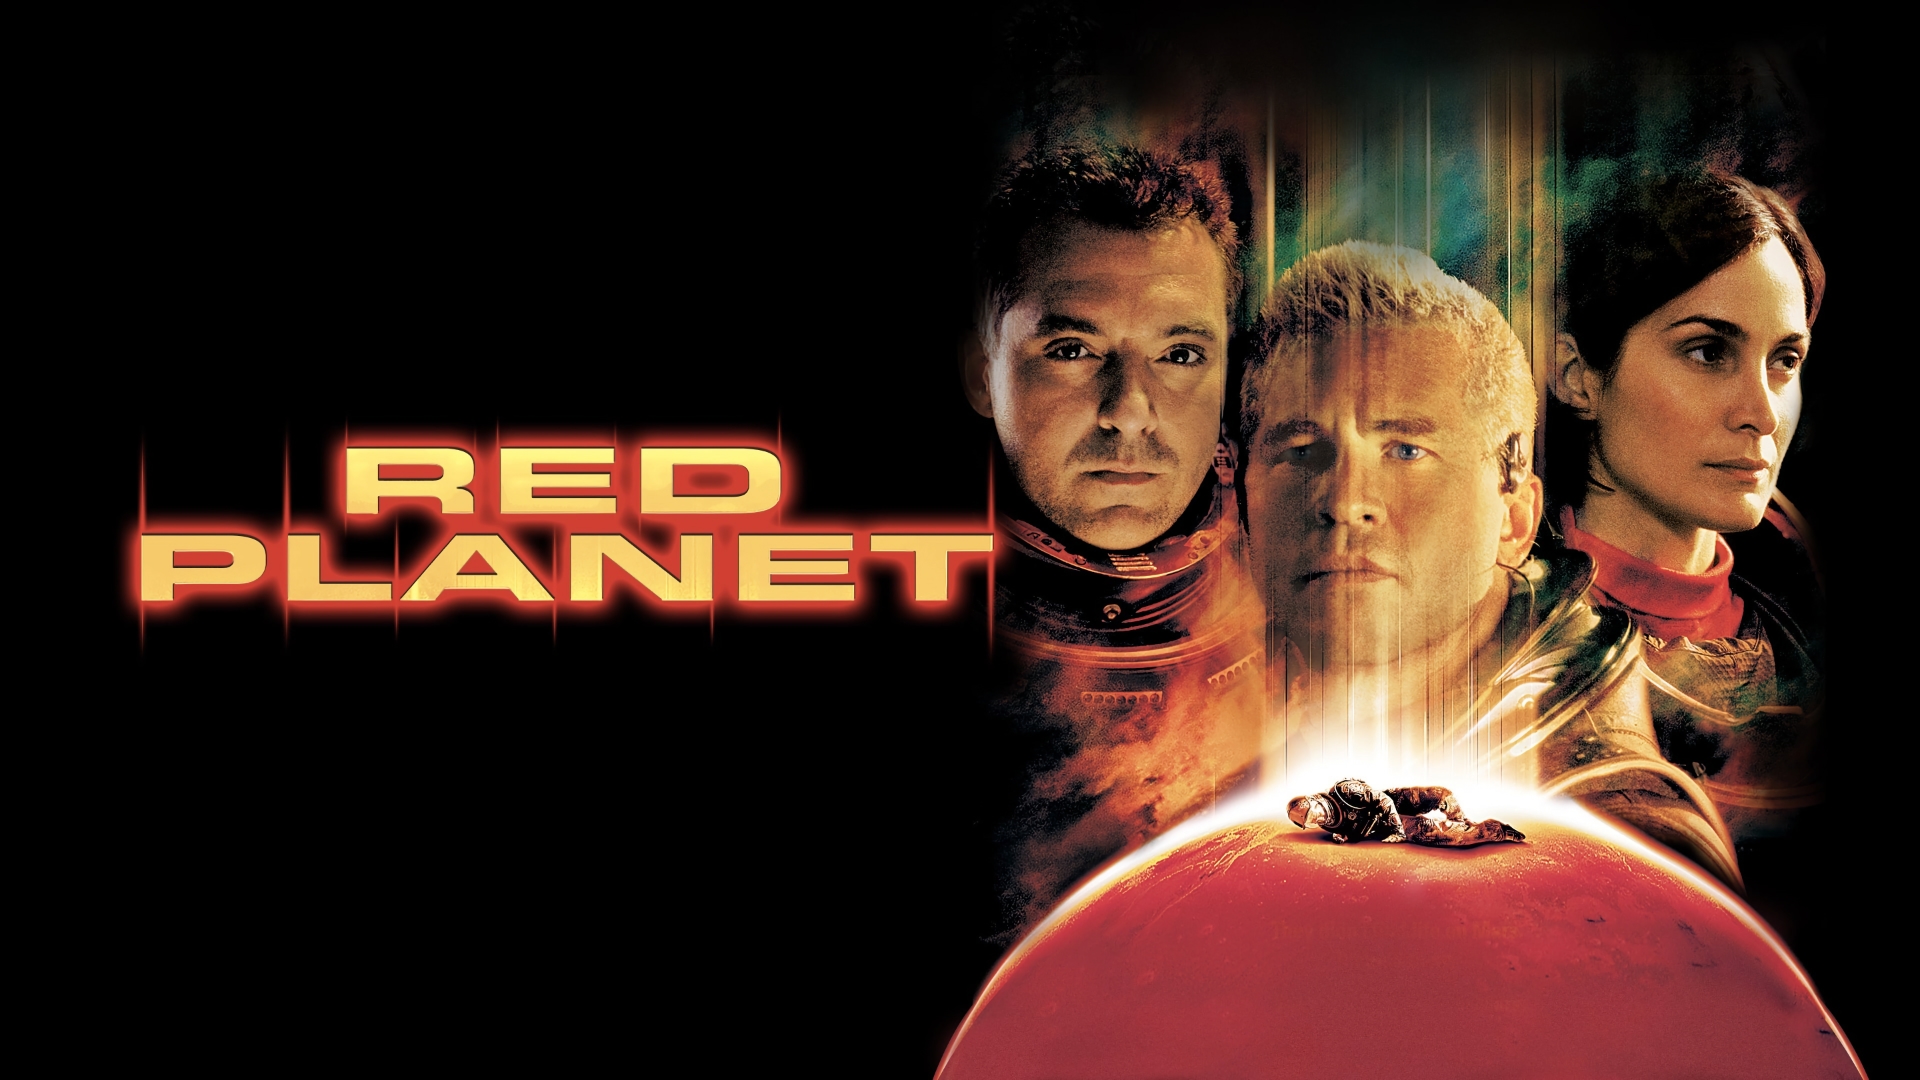 Innovación de pensamiento: Red Planet (Planeta Rojo) es una película muy actual